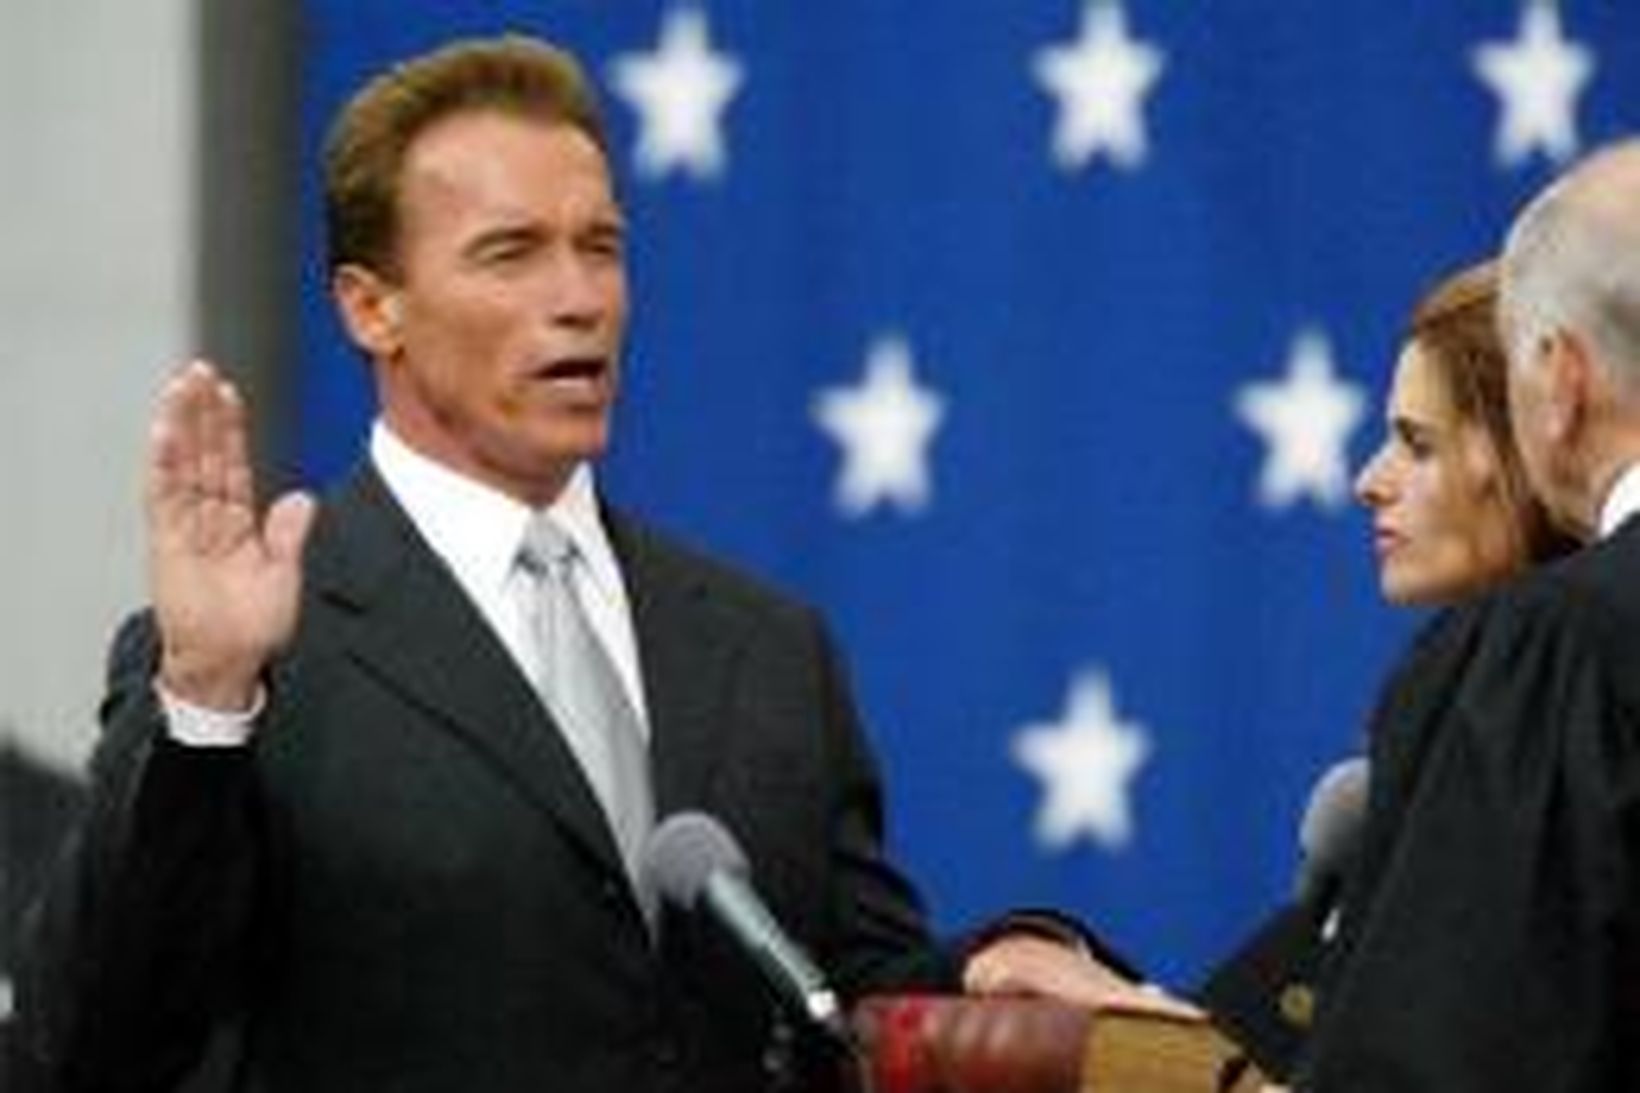 Arnold Schwarzenegger sver embættiseiðinn í kvöld.